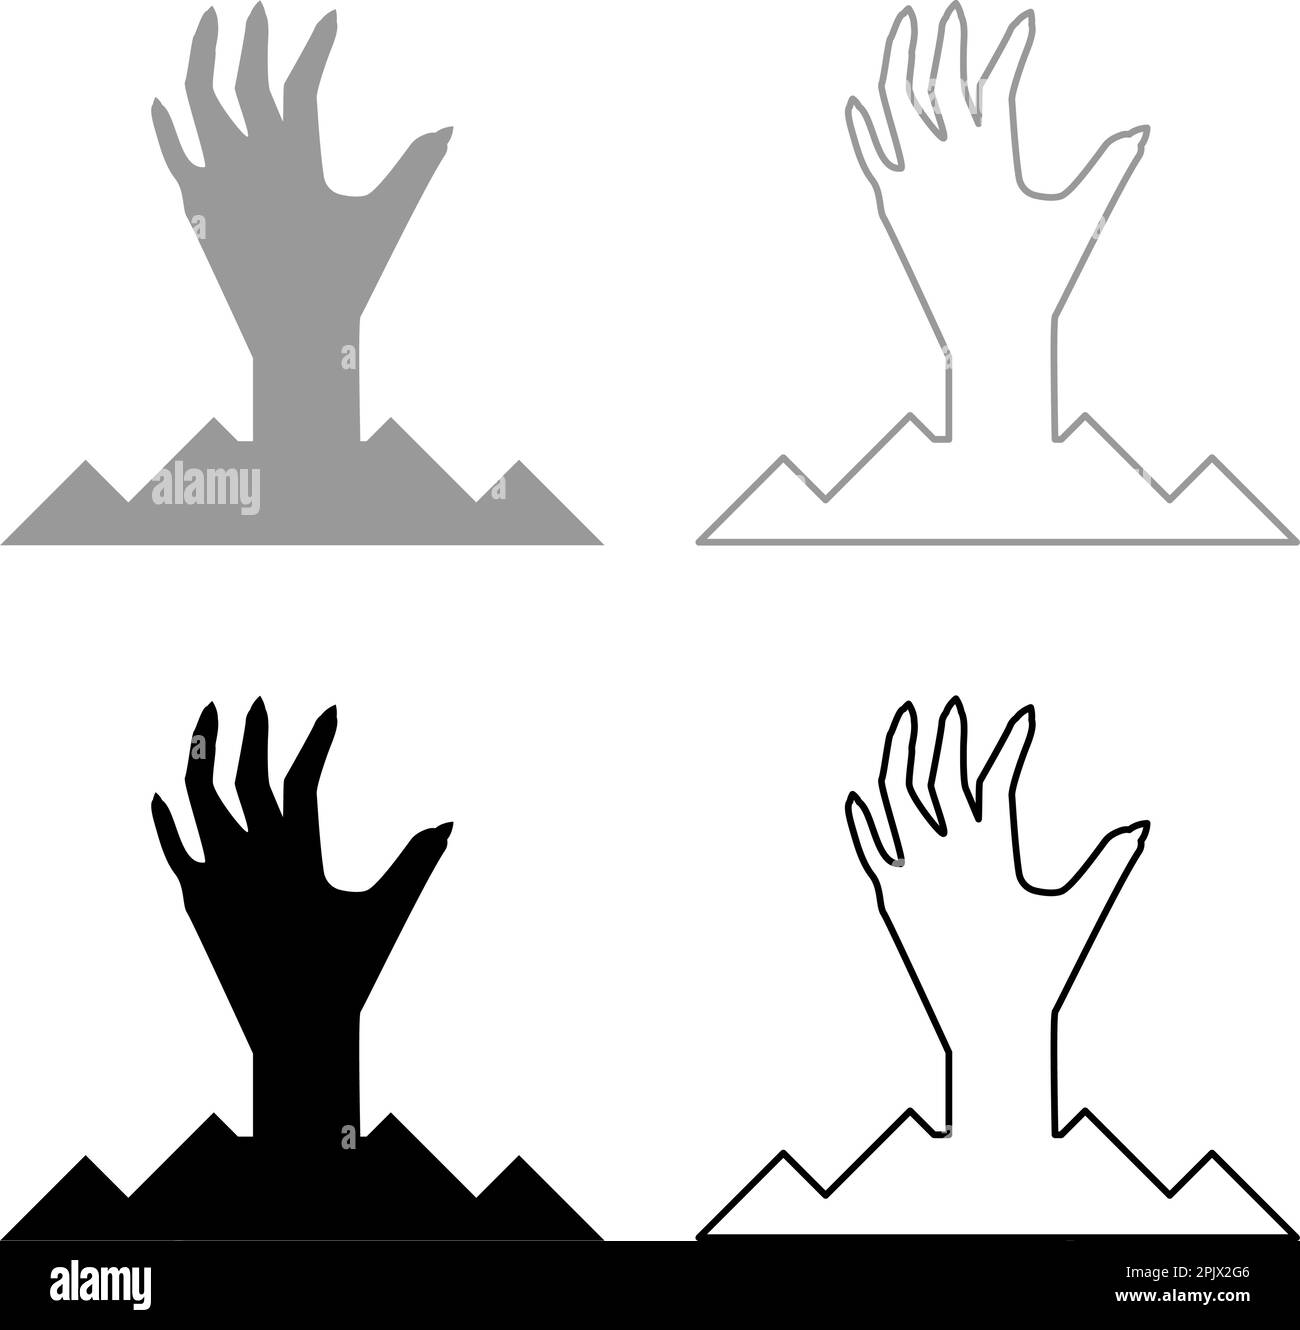 Spaventa la mano umana dal suolo silhouette uomo morto Halloween elemento decorativo zombie concetto spaky zappata unghie affilate unghie osso braccio dita uomo Illustrazione Vettoriale